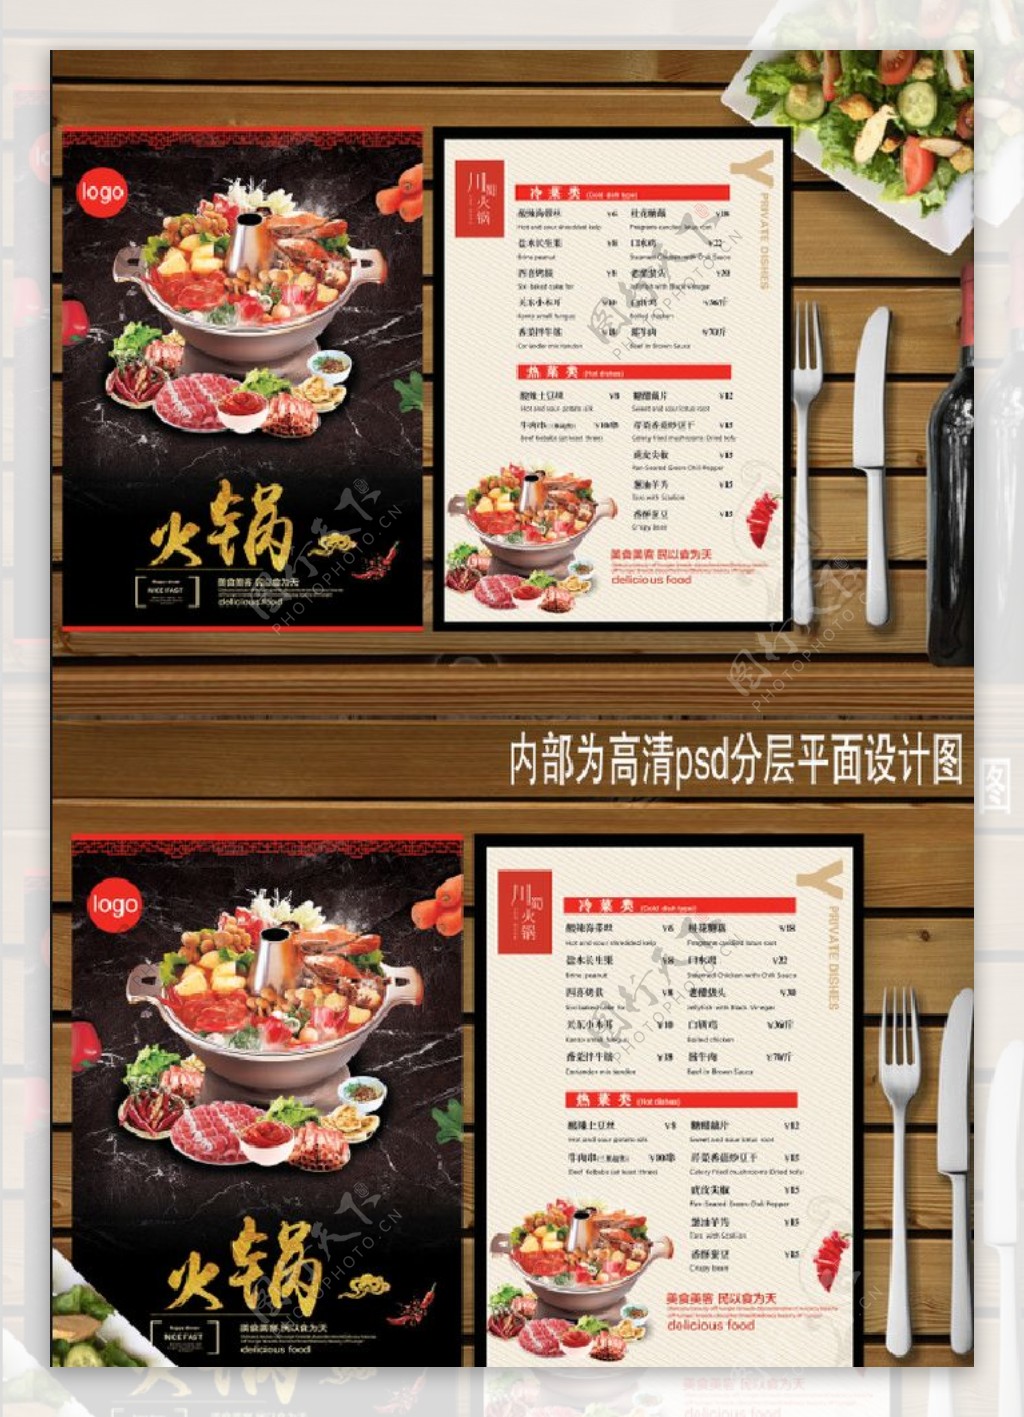 火锅店菜单平面设计图